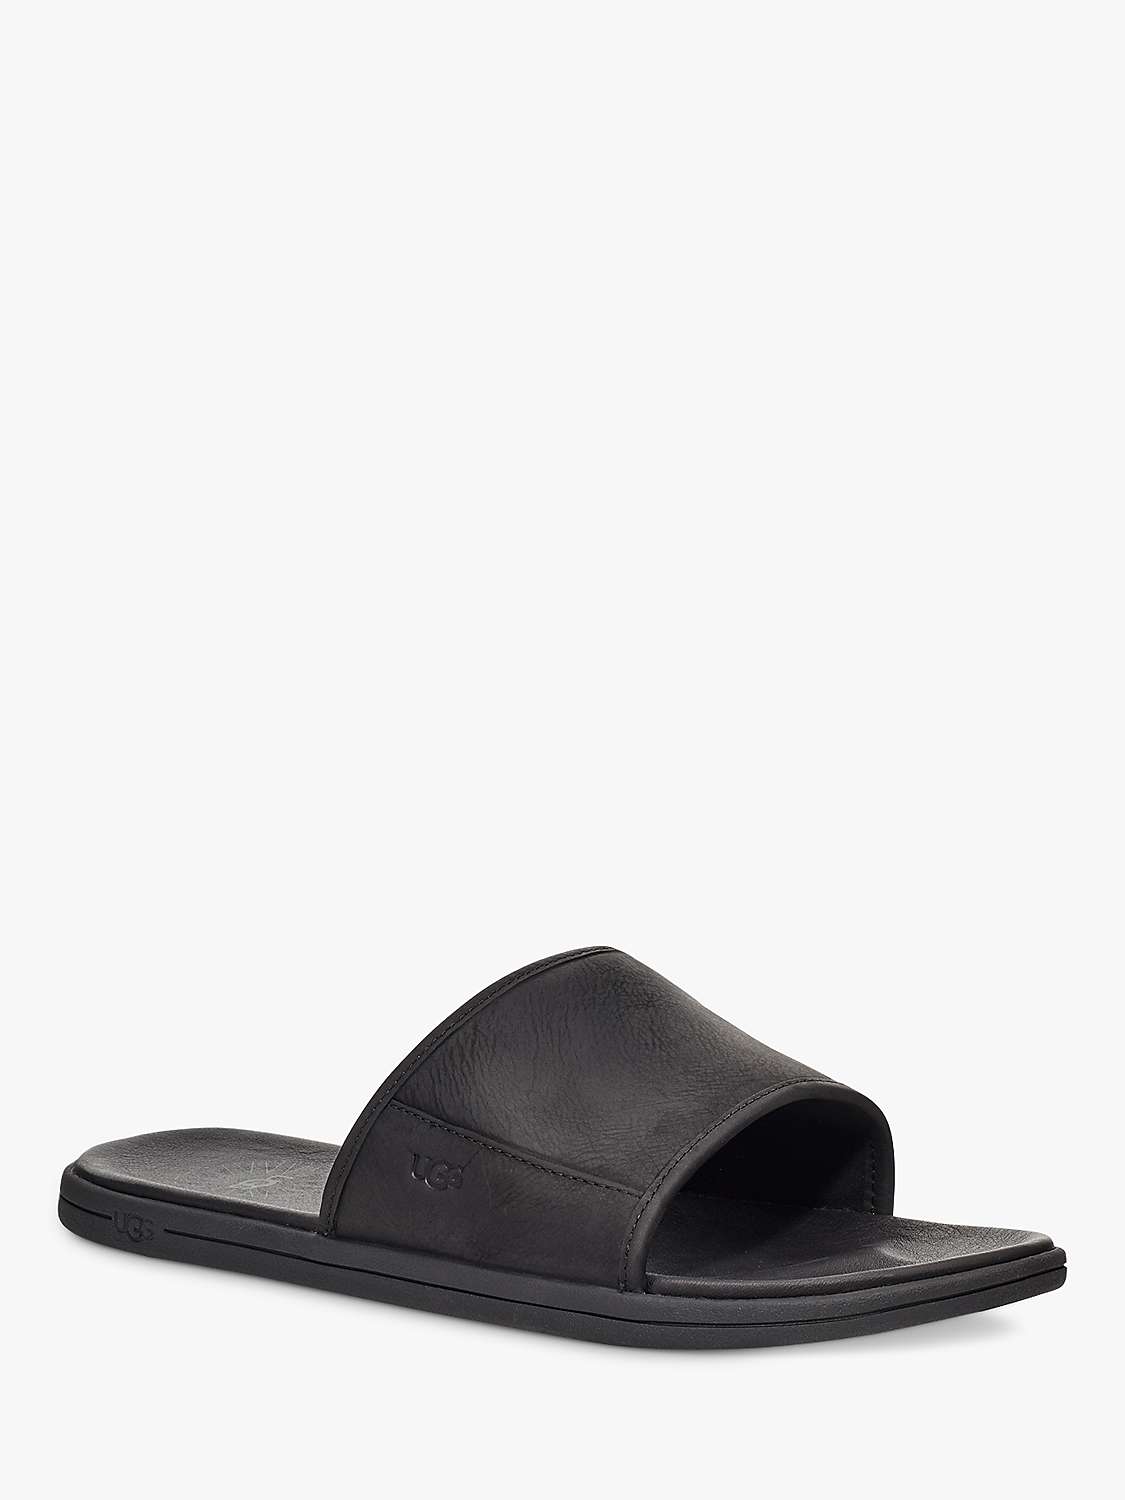 Buy UGG Seaside Slider Sandals, Black Online at johnlewis.com